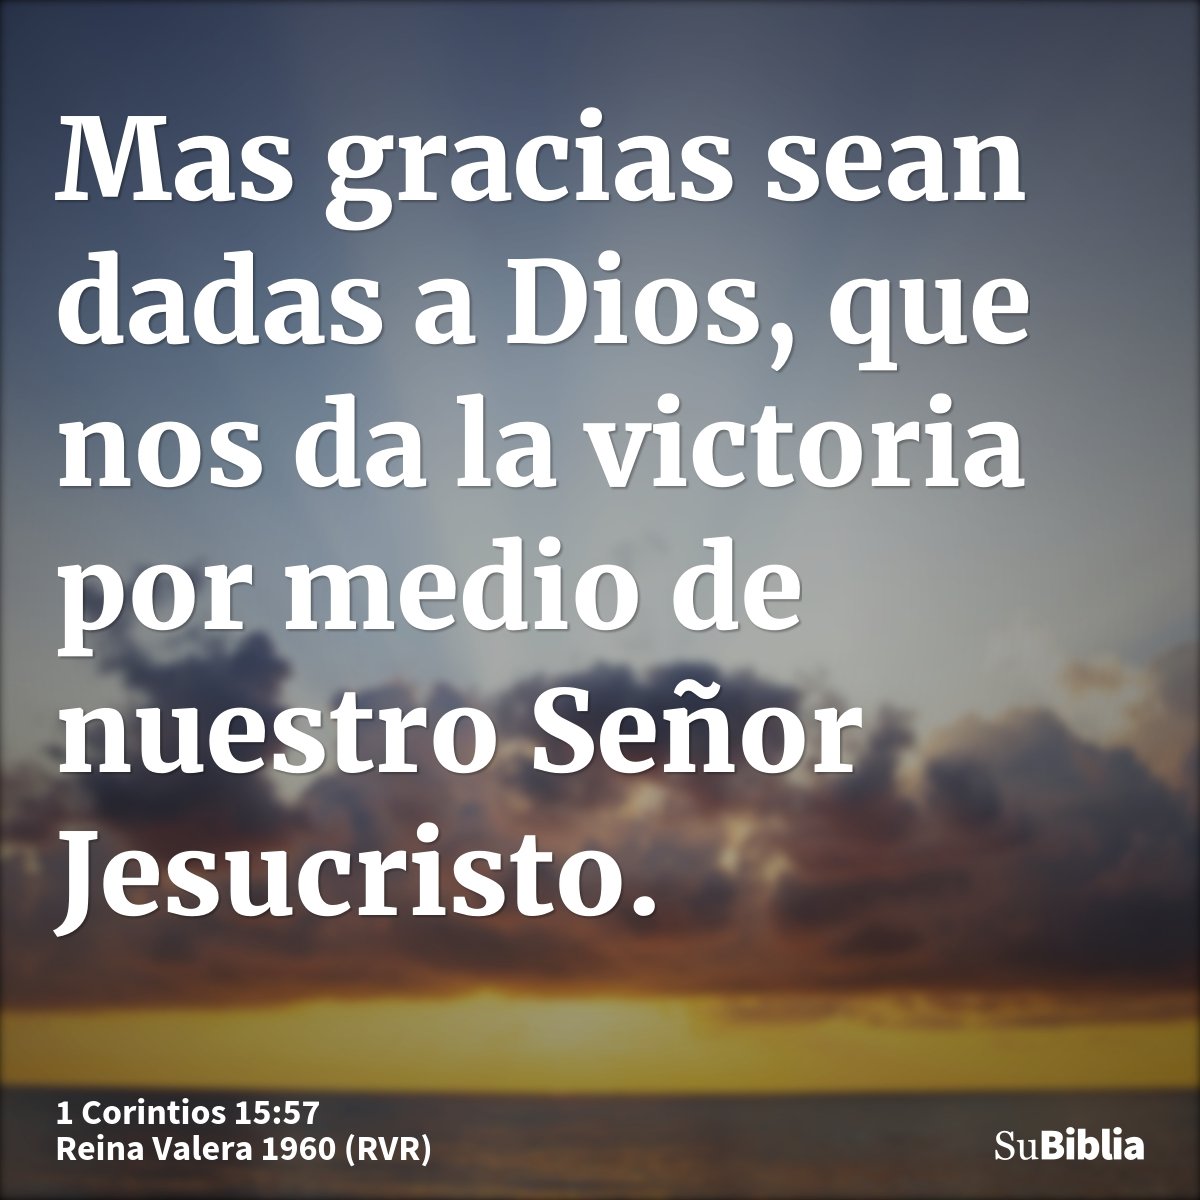 Mas gracias sean dadas a Dios, que nos da la victoria por medio de nuestro Señor Jesucristo.